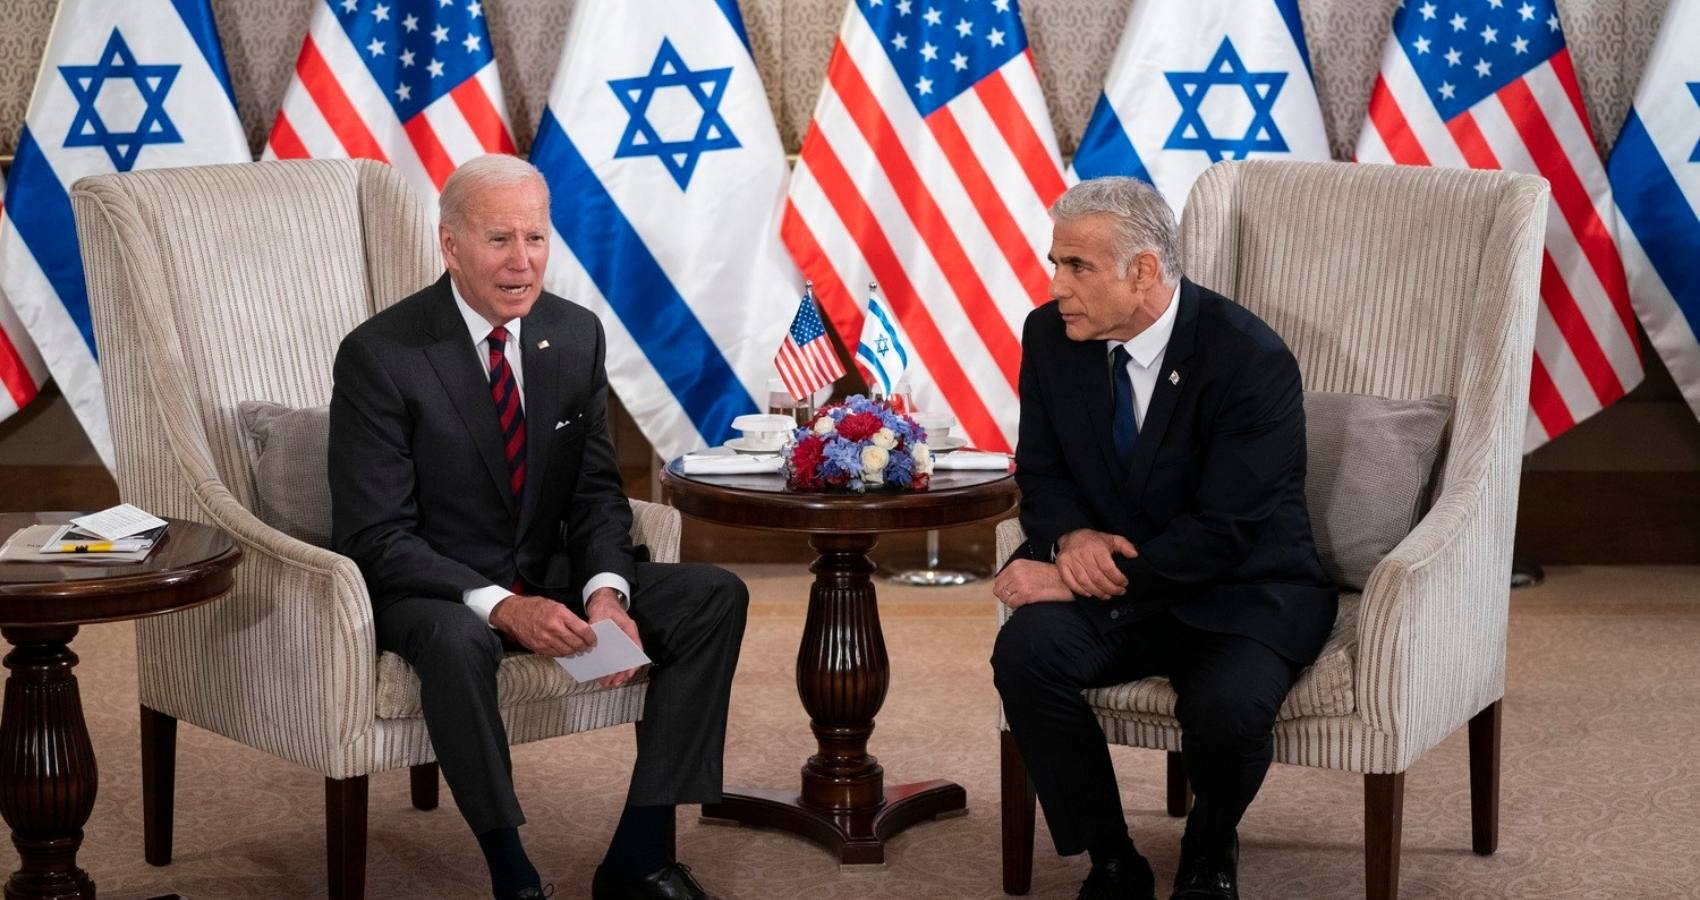 Takeaways from Biden’s Middle East trip